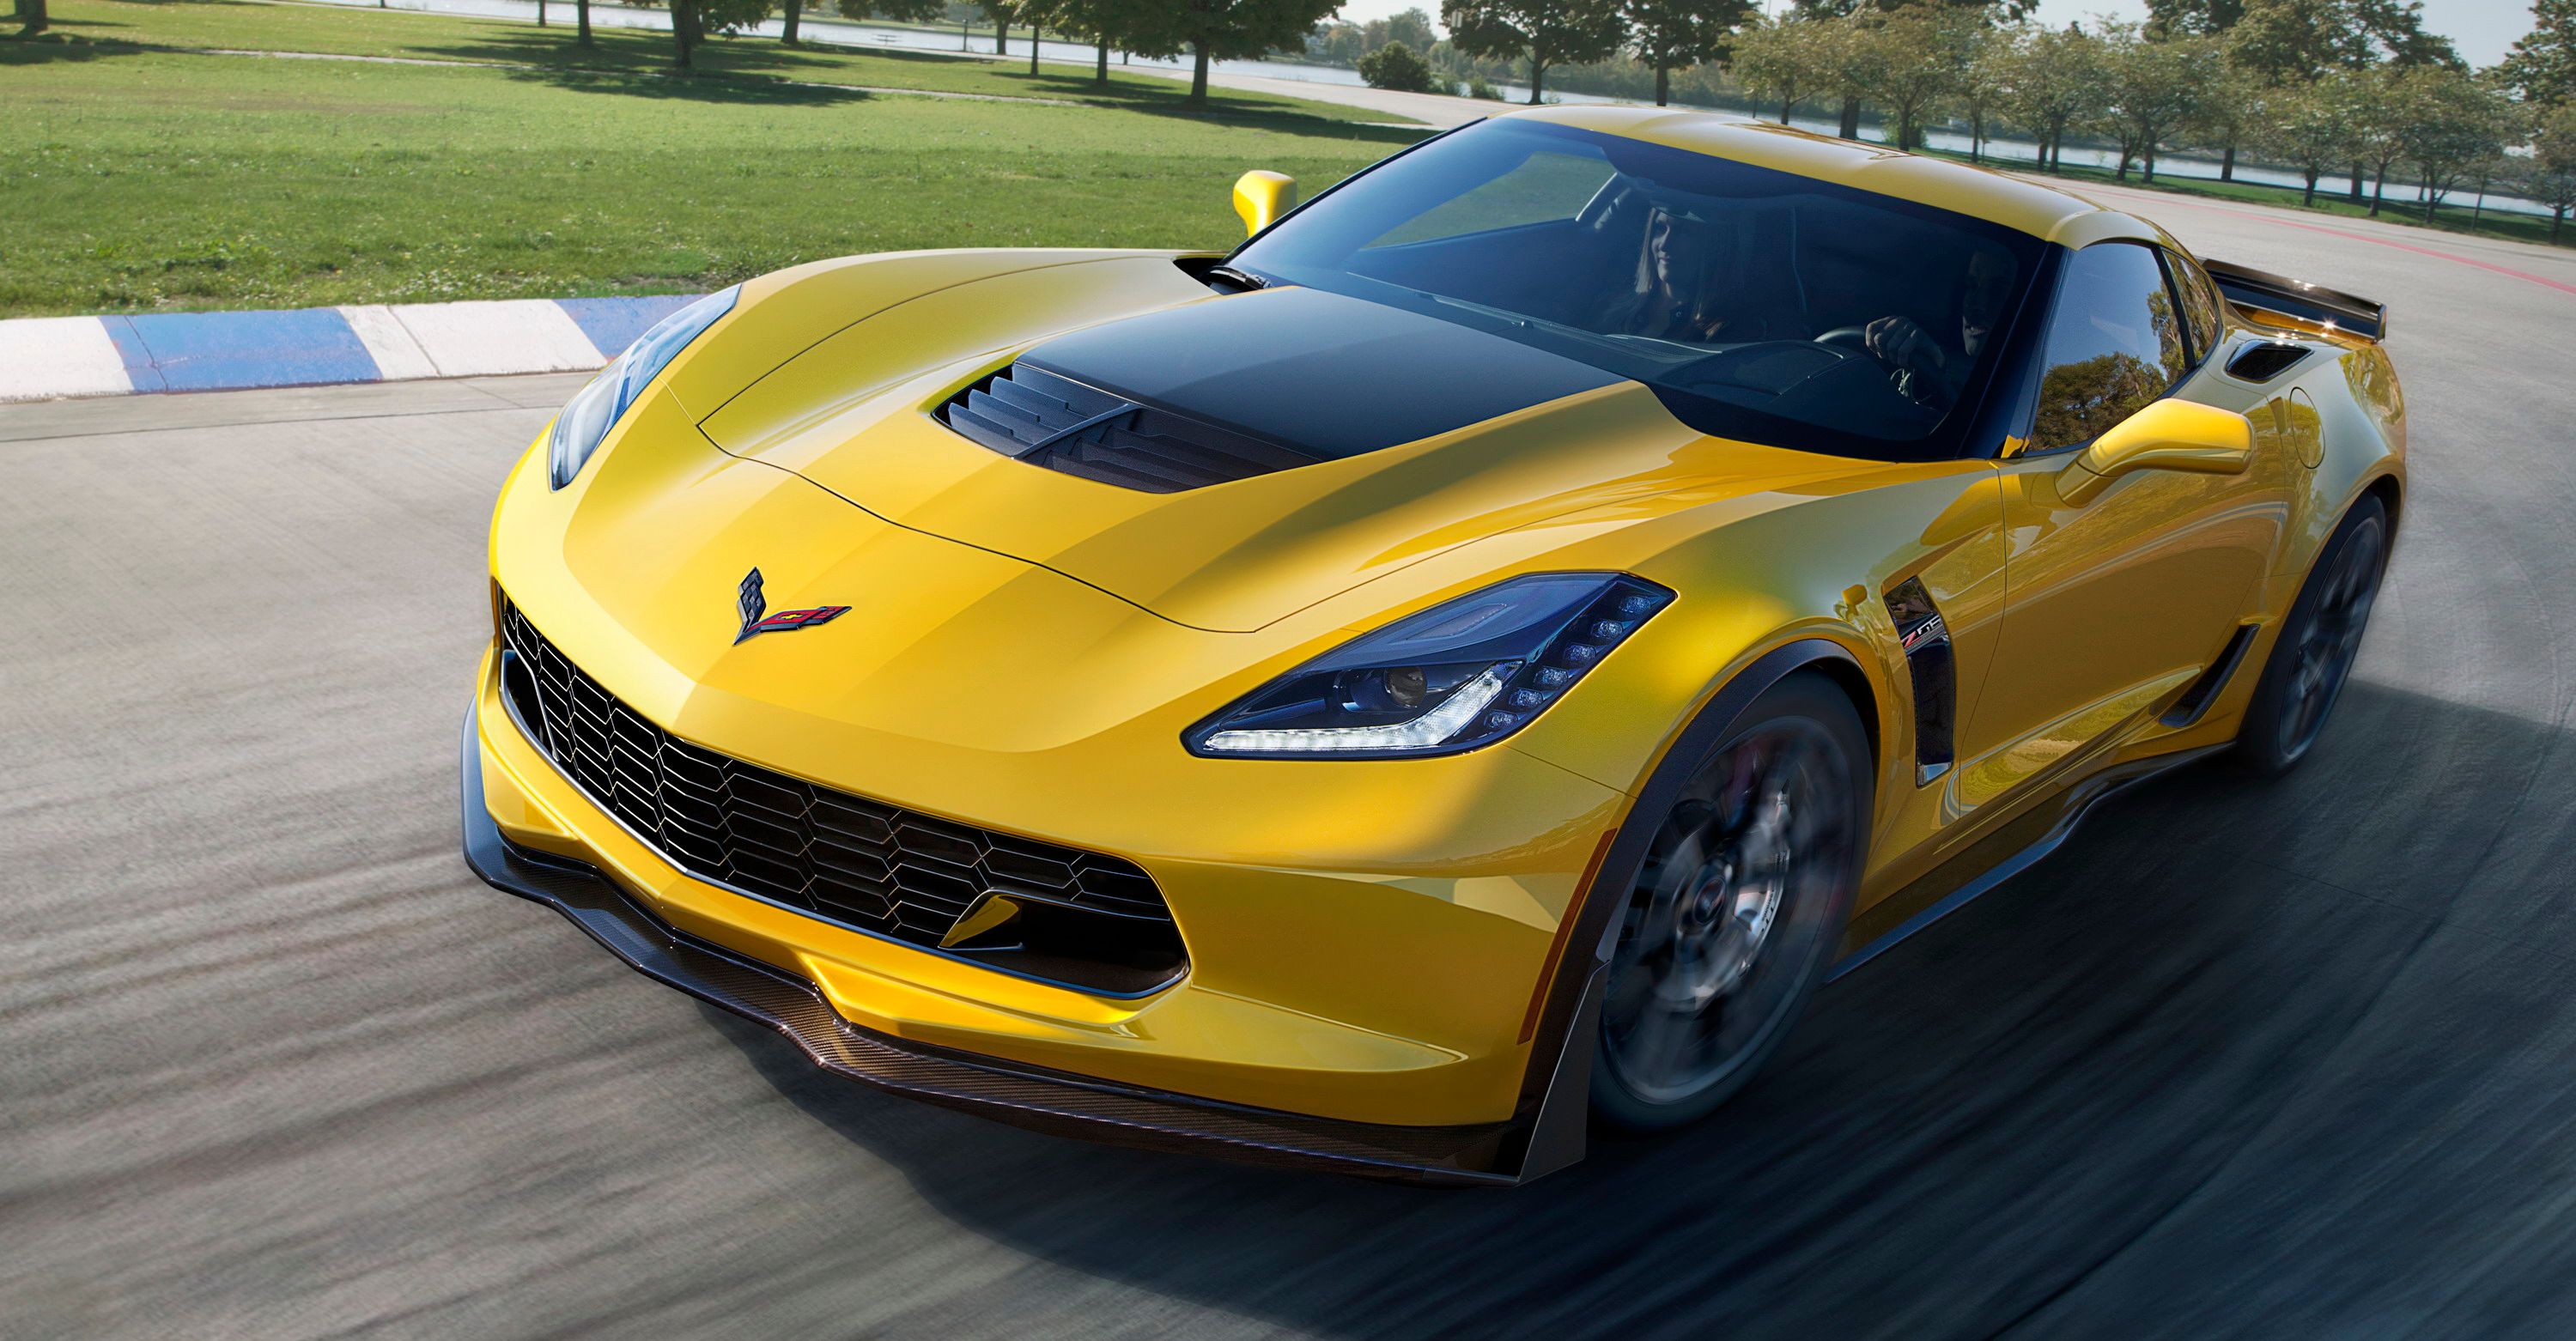 2015 Chevrolet Corvette Zora Detailed; Hybrid Corvette by 2020